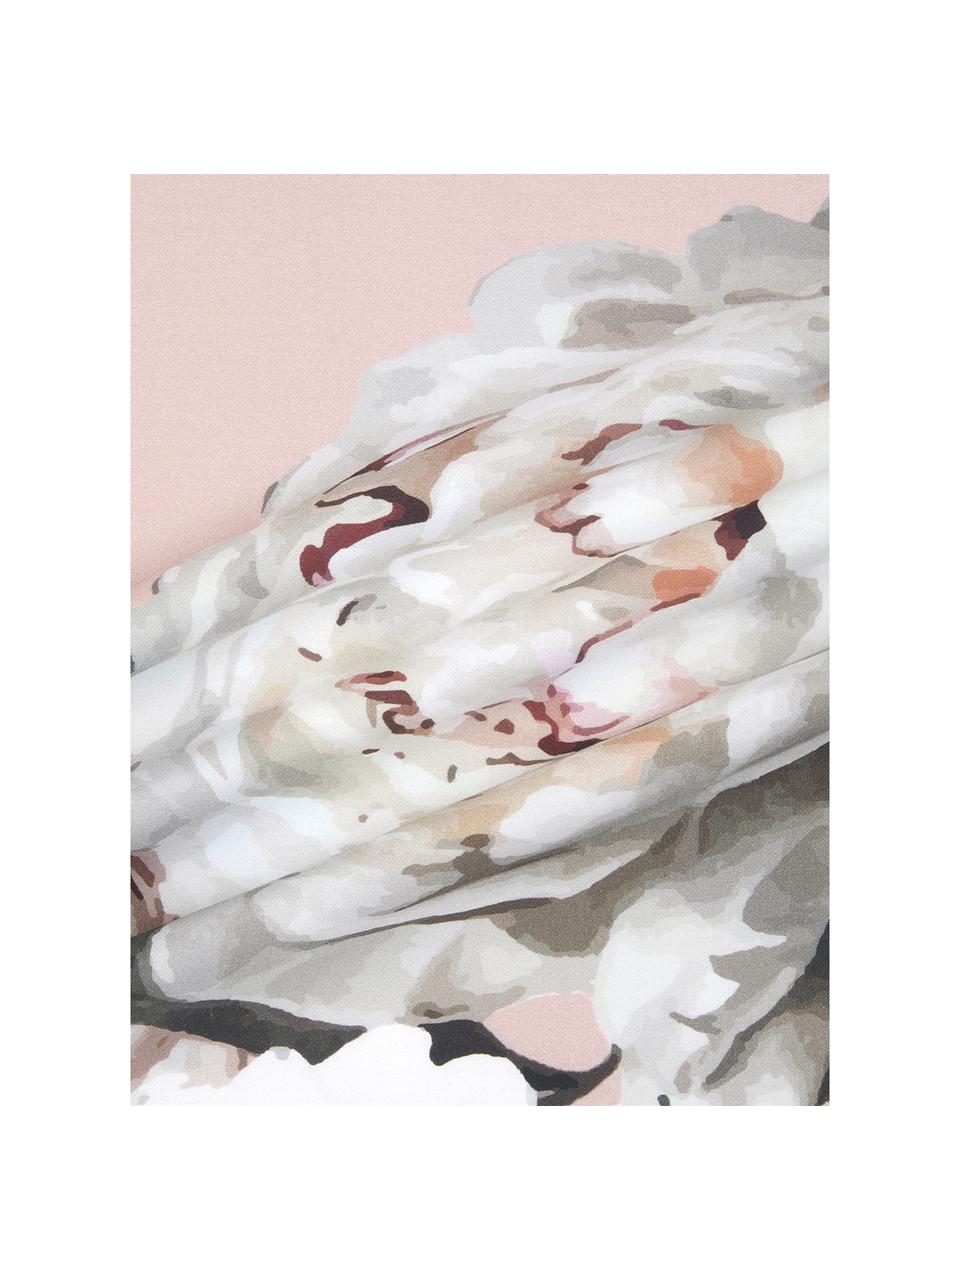 Parure letto in raso di cotone Blossom, Rosa, 240 x 300 cm + 2 federe 50 x 80 cm